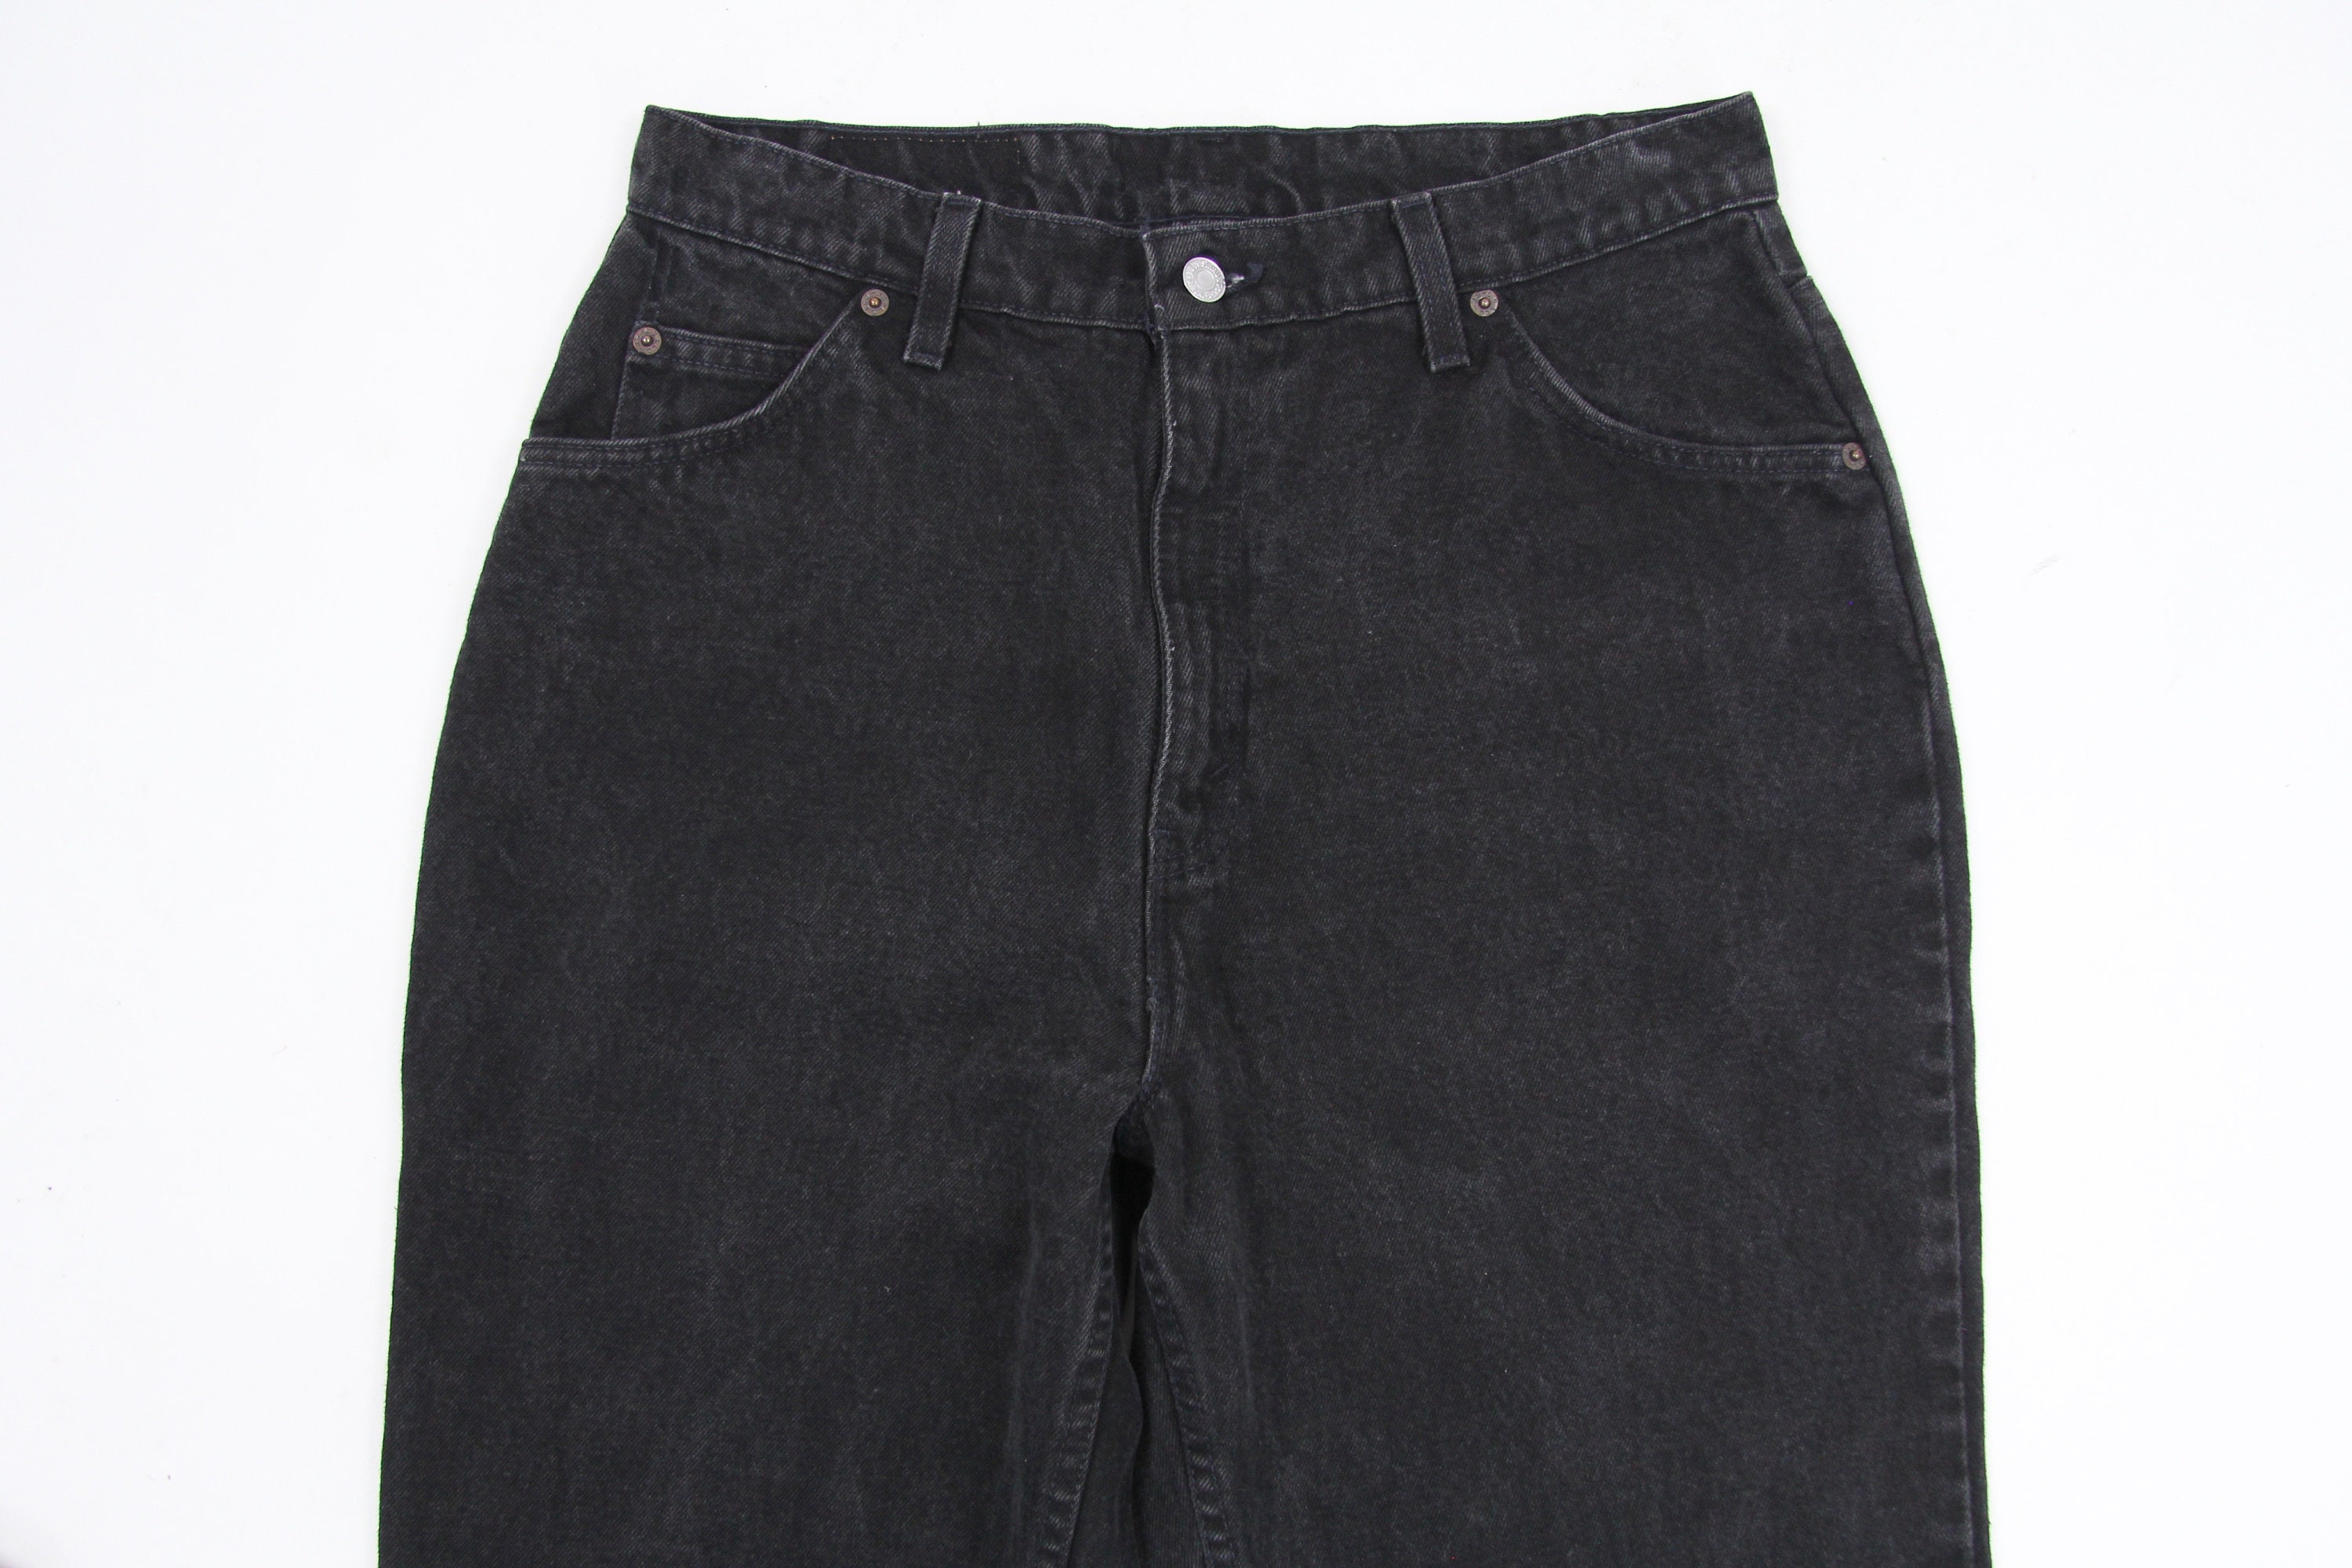 Levi's 921 Black Denim Jeans Women's Pants Vintage Size 16 Med Made in ...